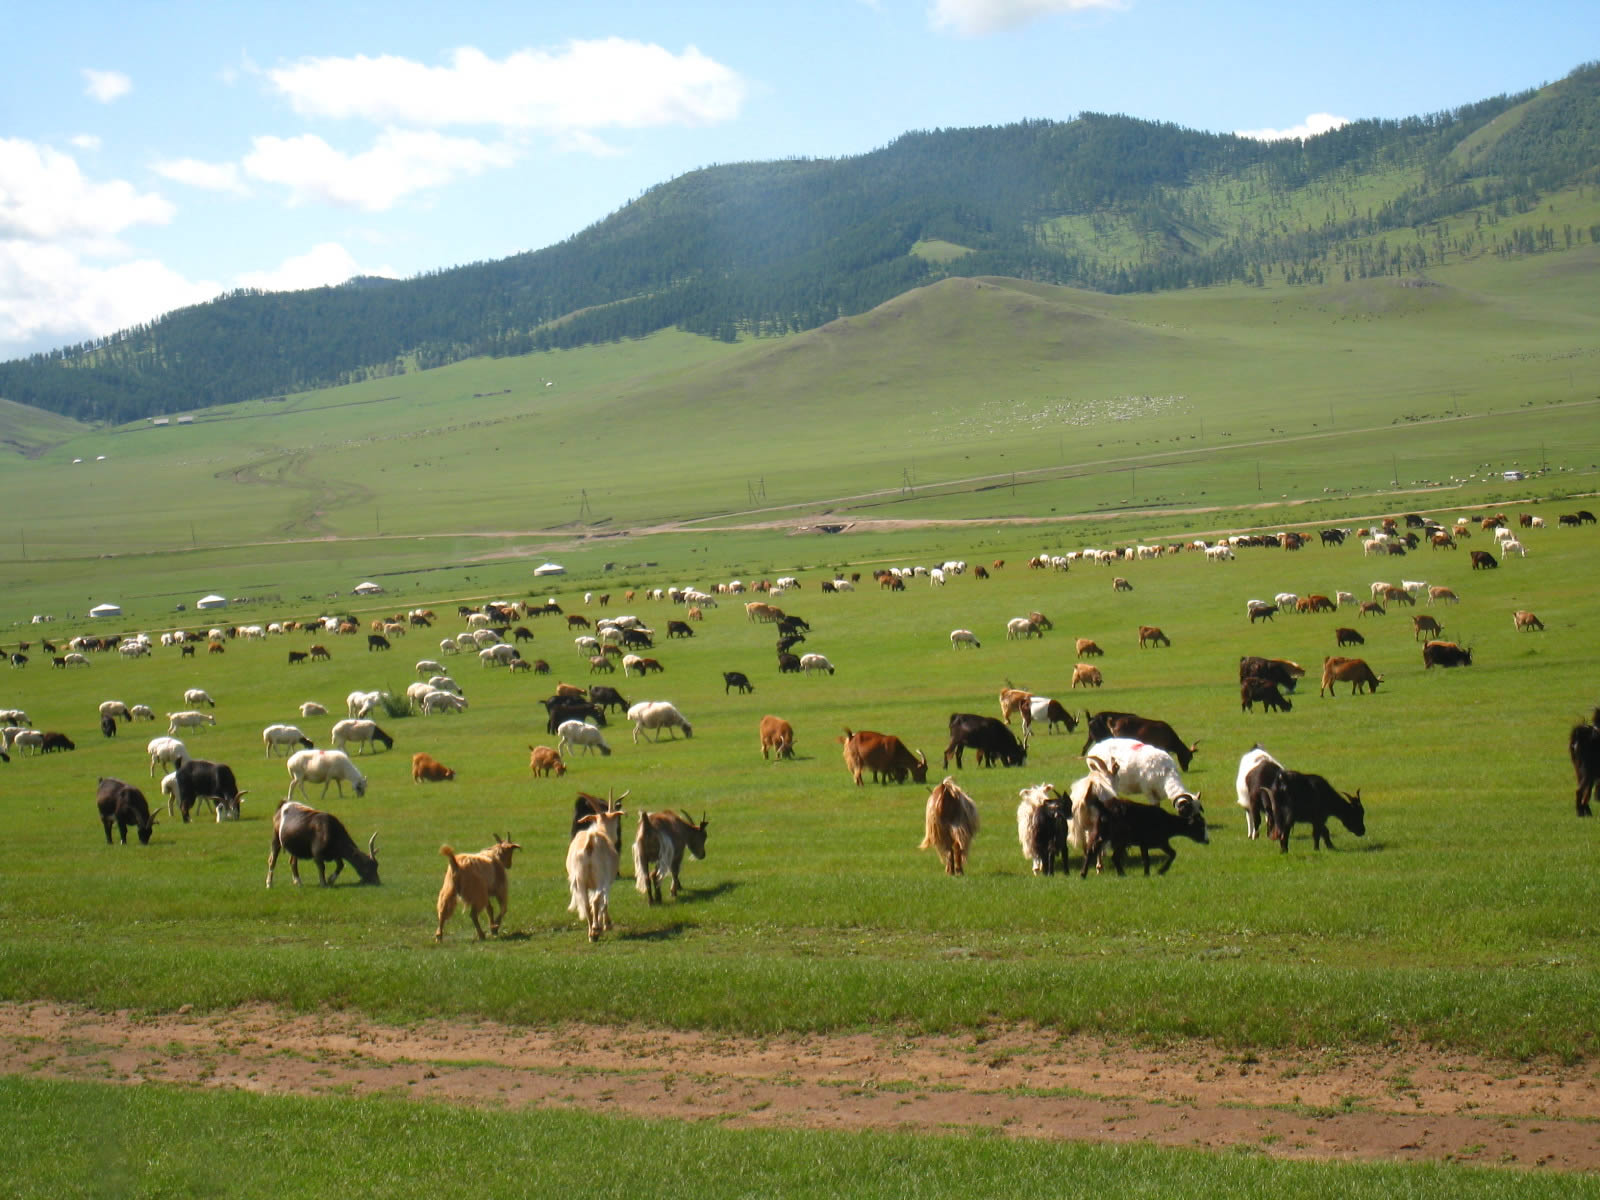 Mongolie 3 million personnes 40 million animals